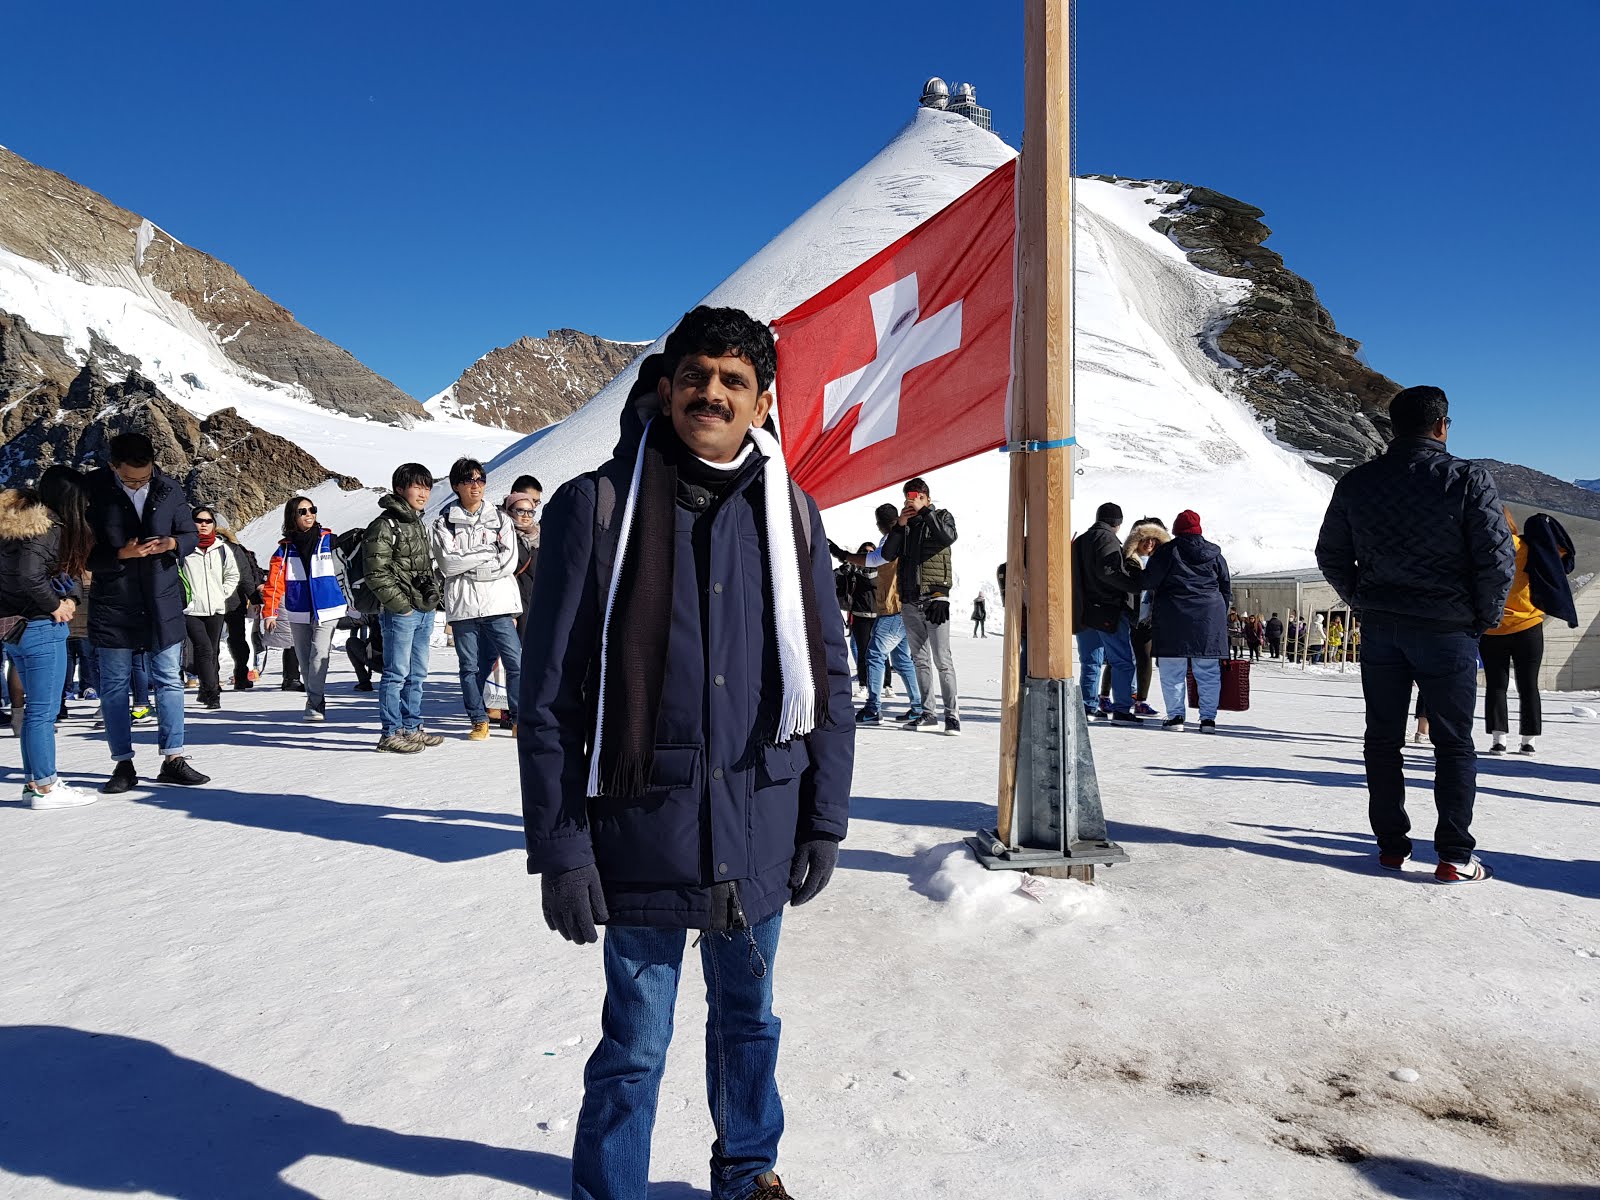 At the top of Europe, Jungfraujoch, Switzerland